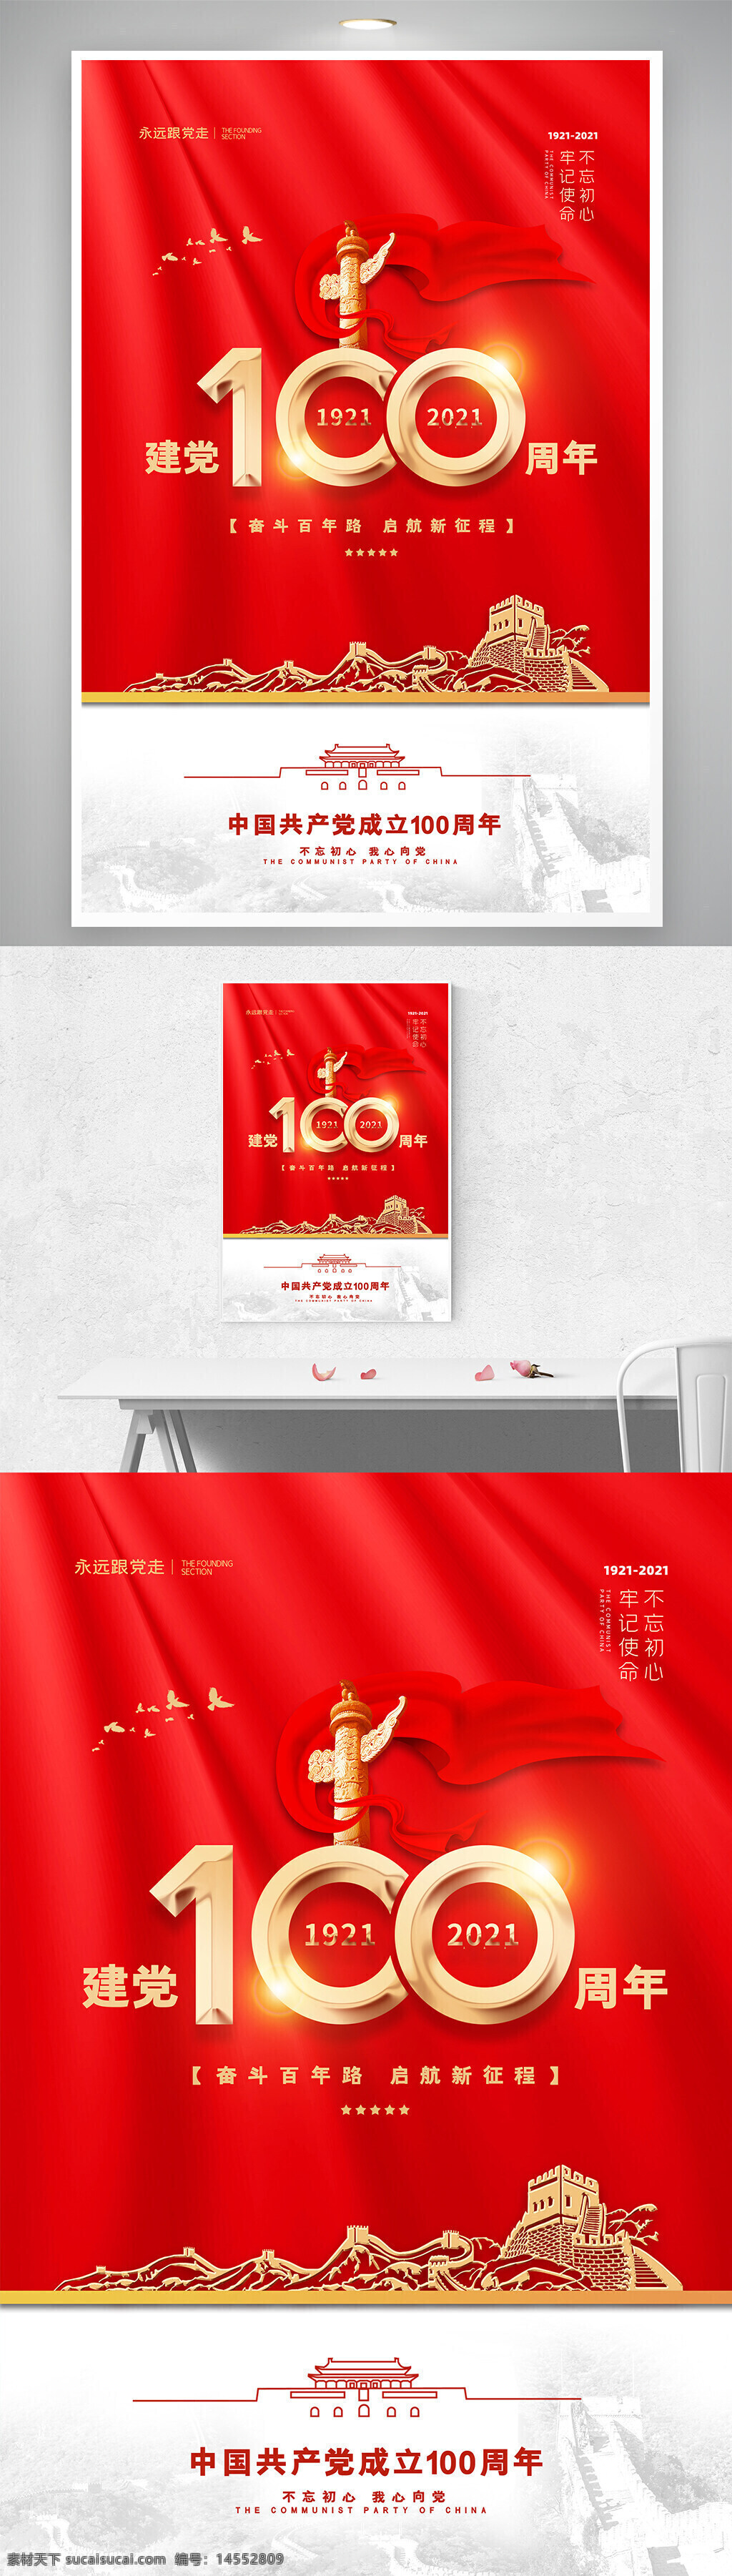 红色 大气 长城 建党 100周年 党建 宣传 海报